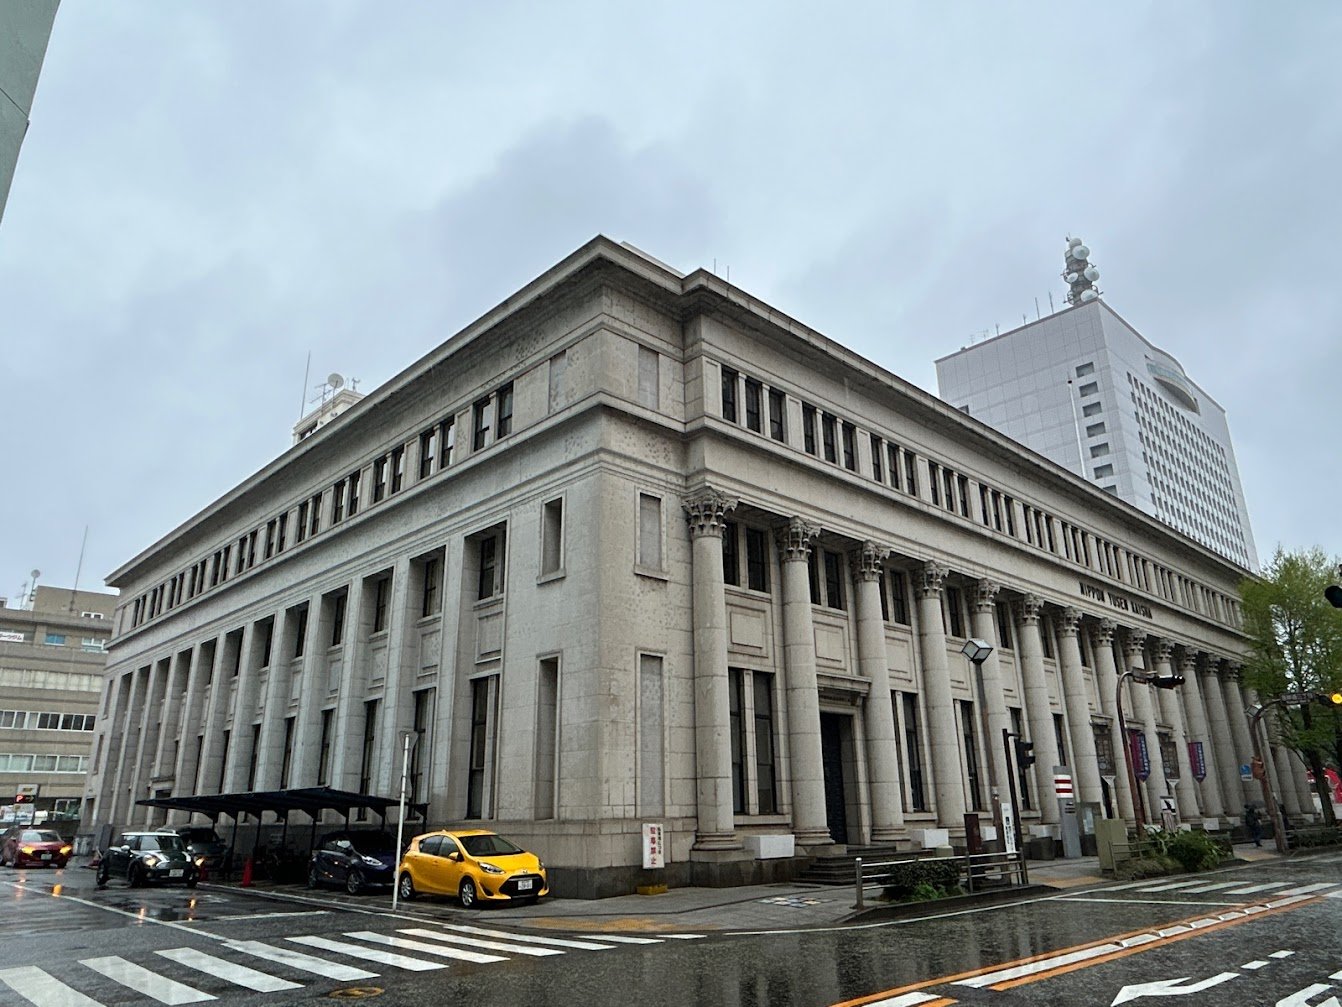 日本郵船歴史博物館